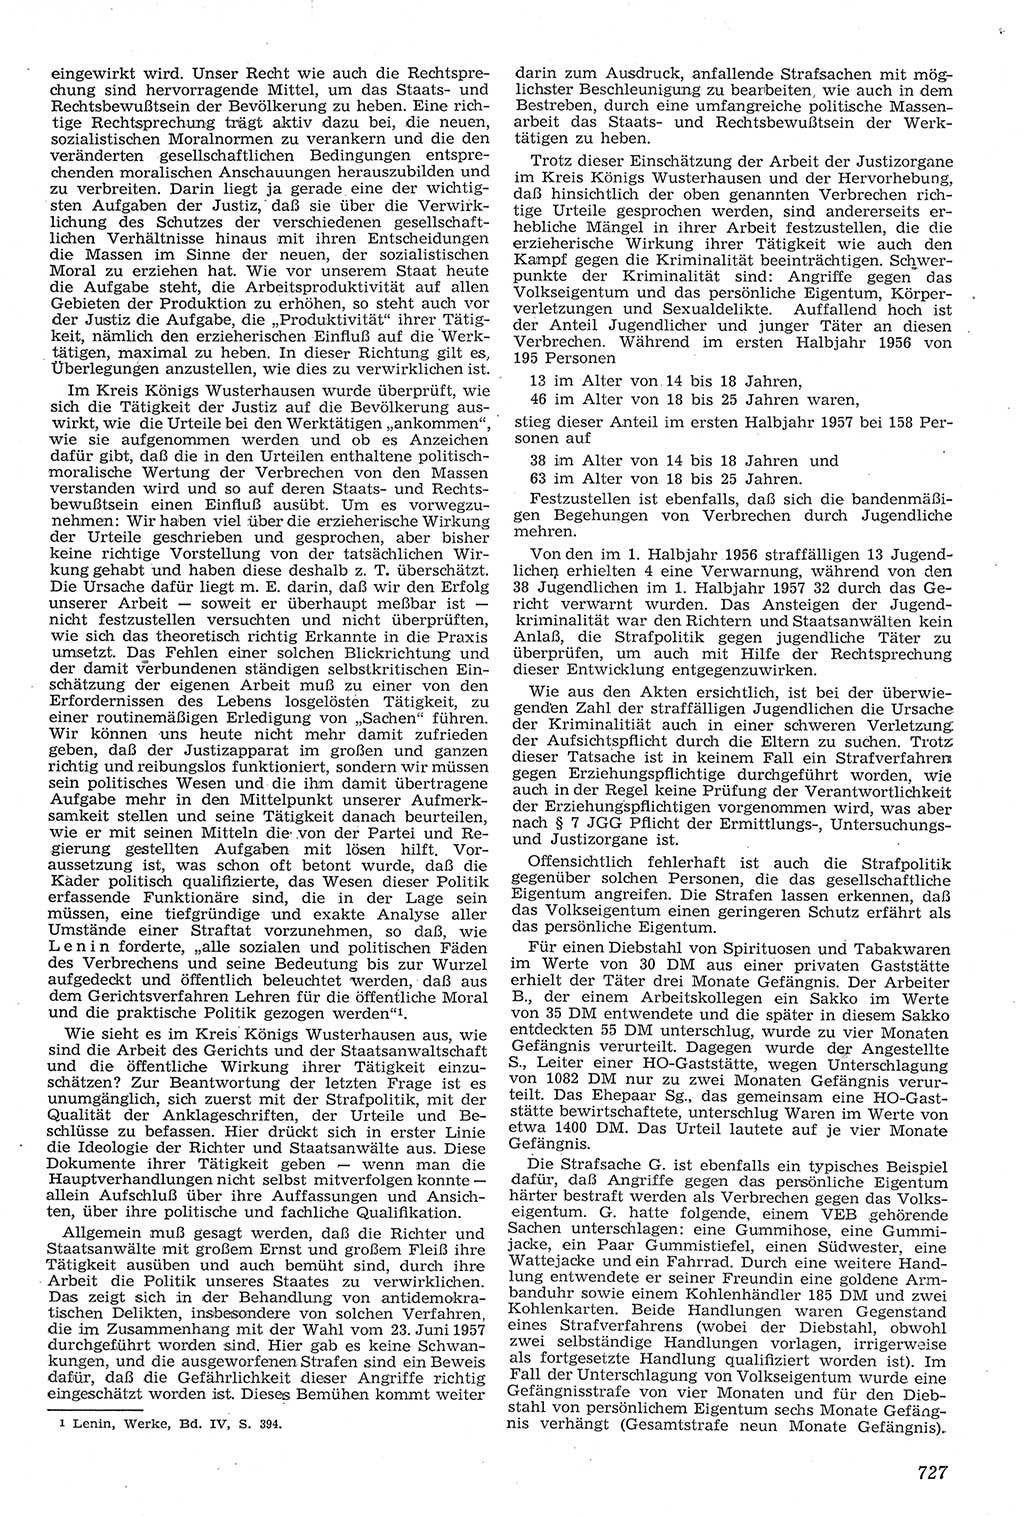 Neue Justiz (NJ), Zeitschrift für Recht und Rechtswissenschaft [Deutsche Demokratische Republik (DDR)], 11. Jahrgang 1957, Seite 727 (NJ DDR 1957, S. 727)